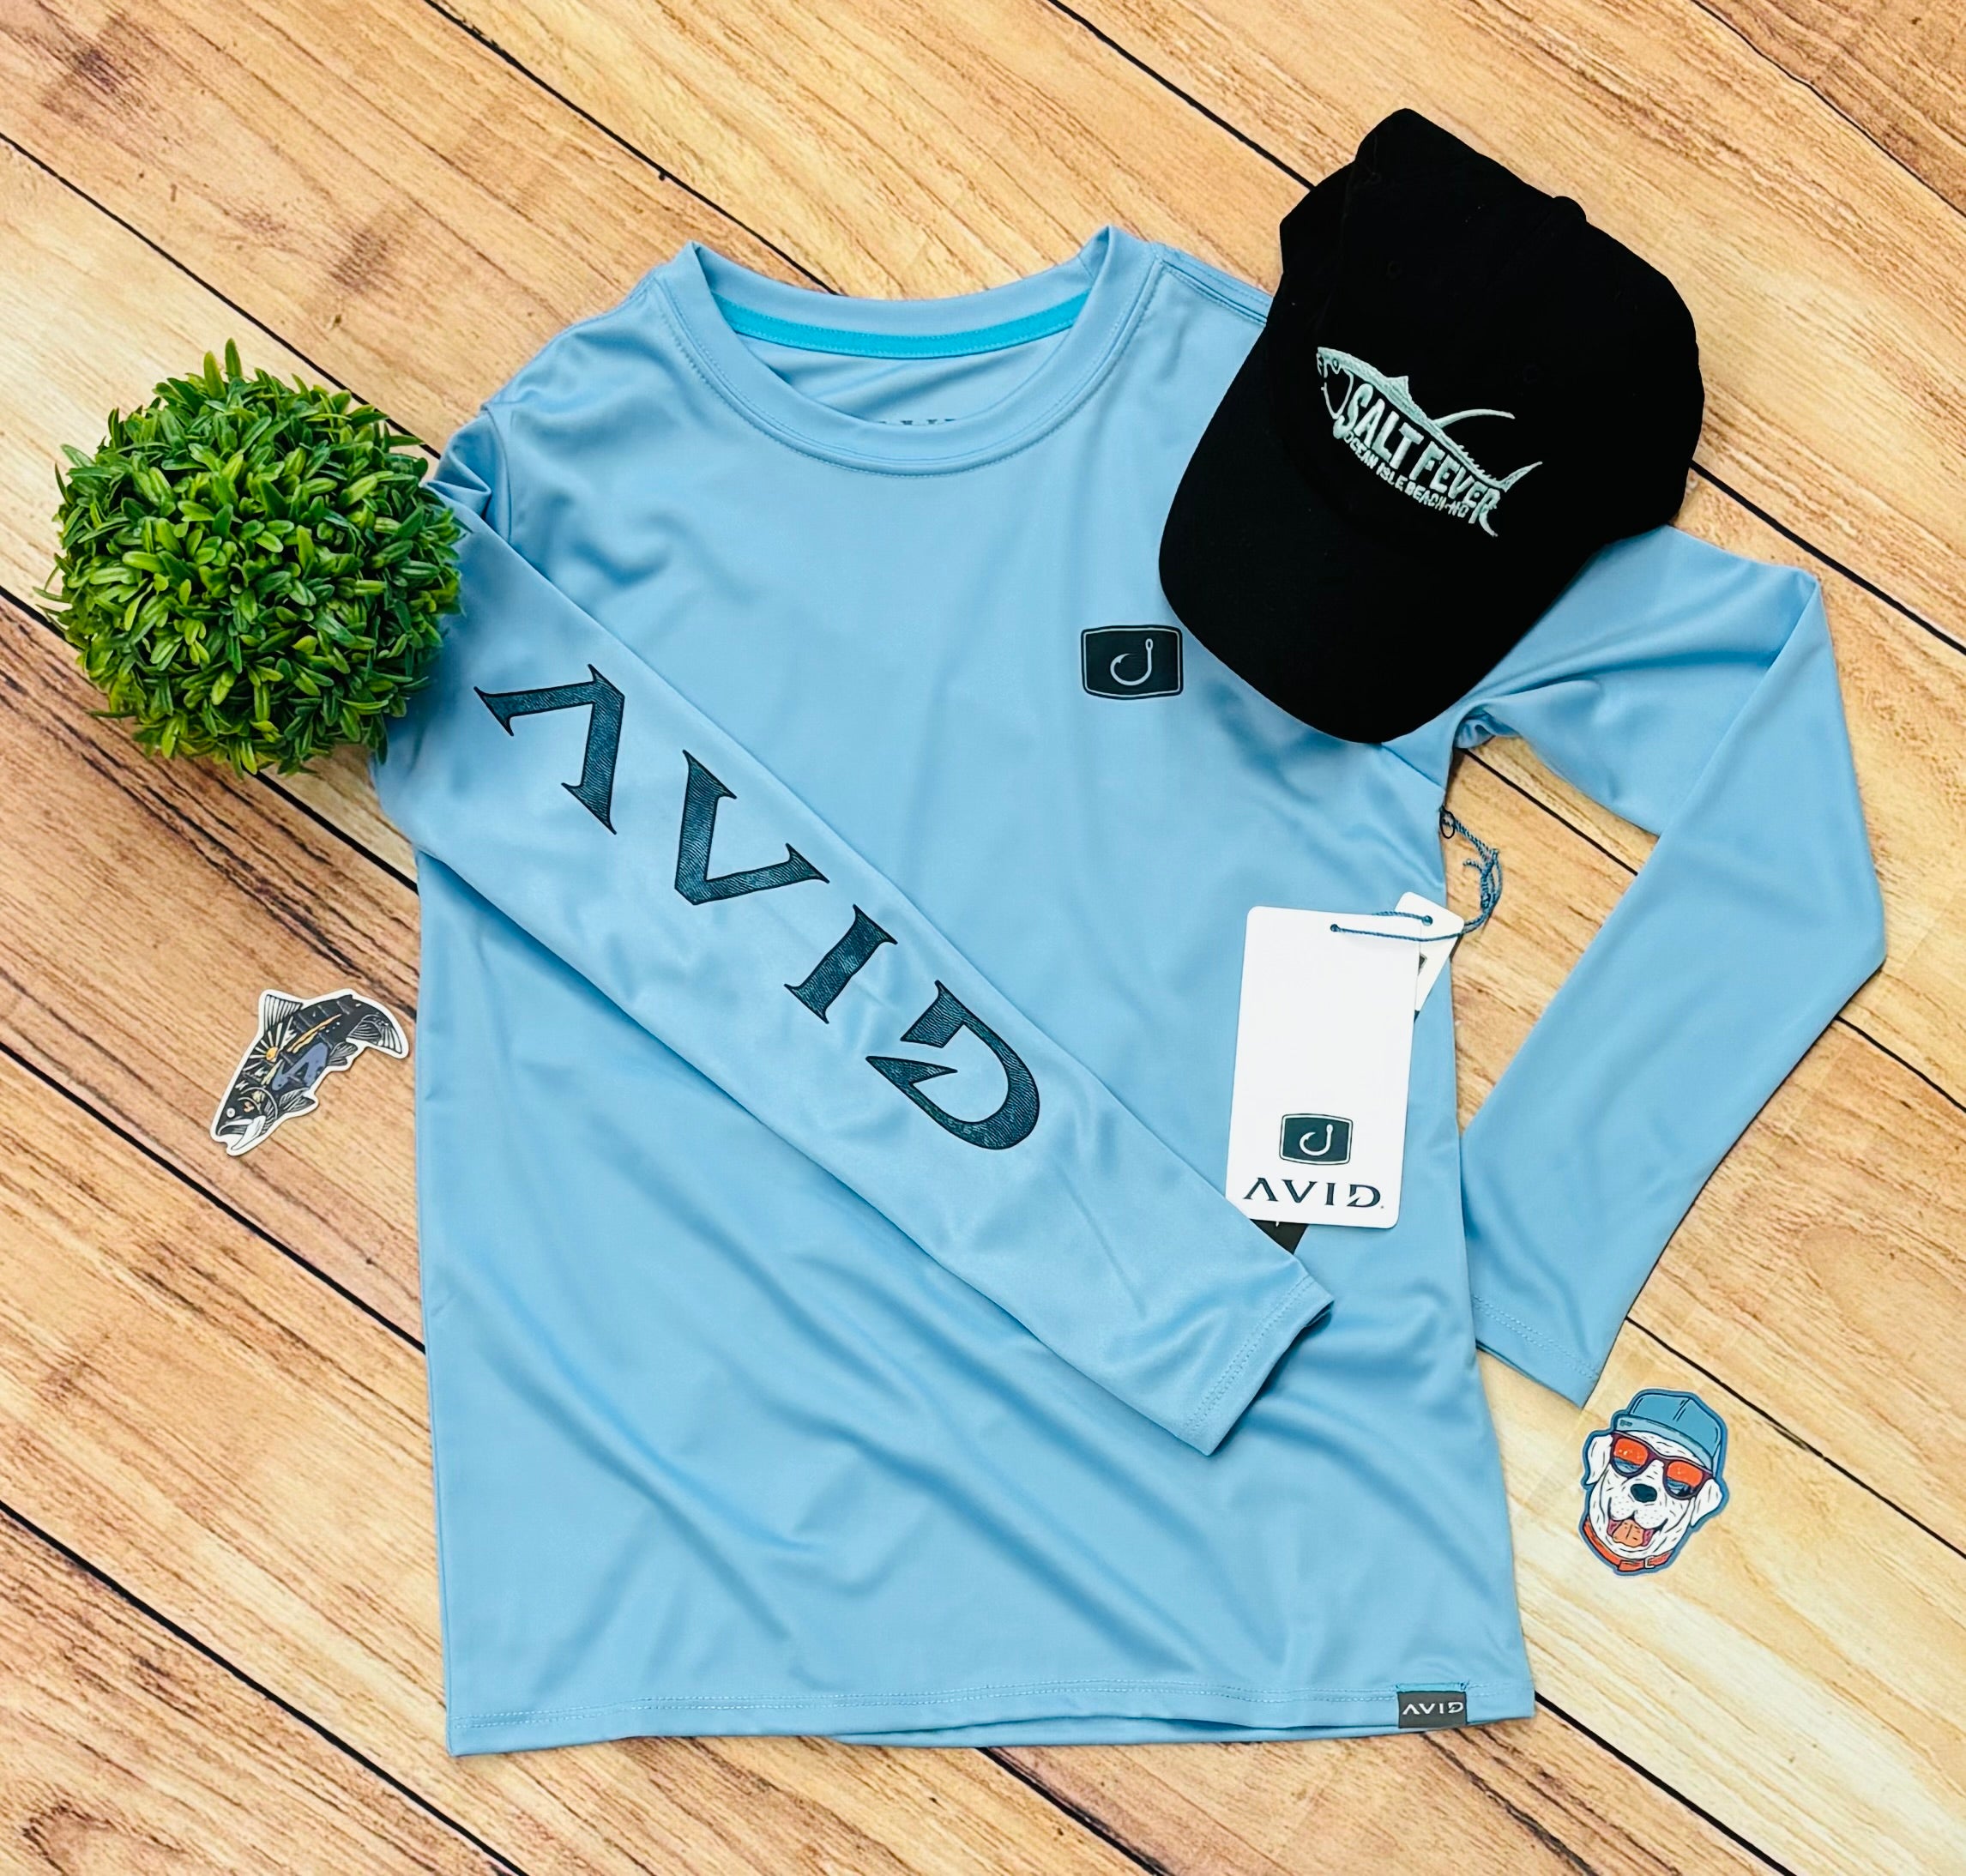 AVID Sportswear – American Aquatic